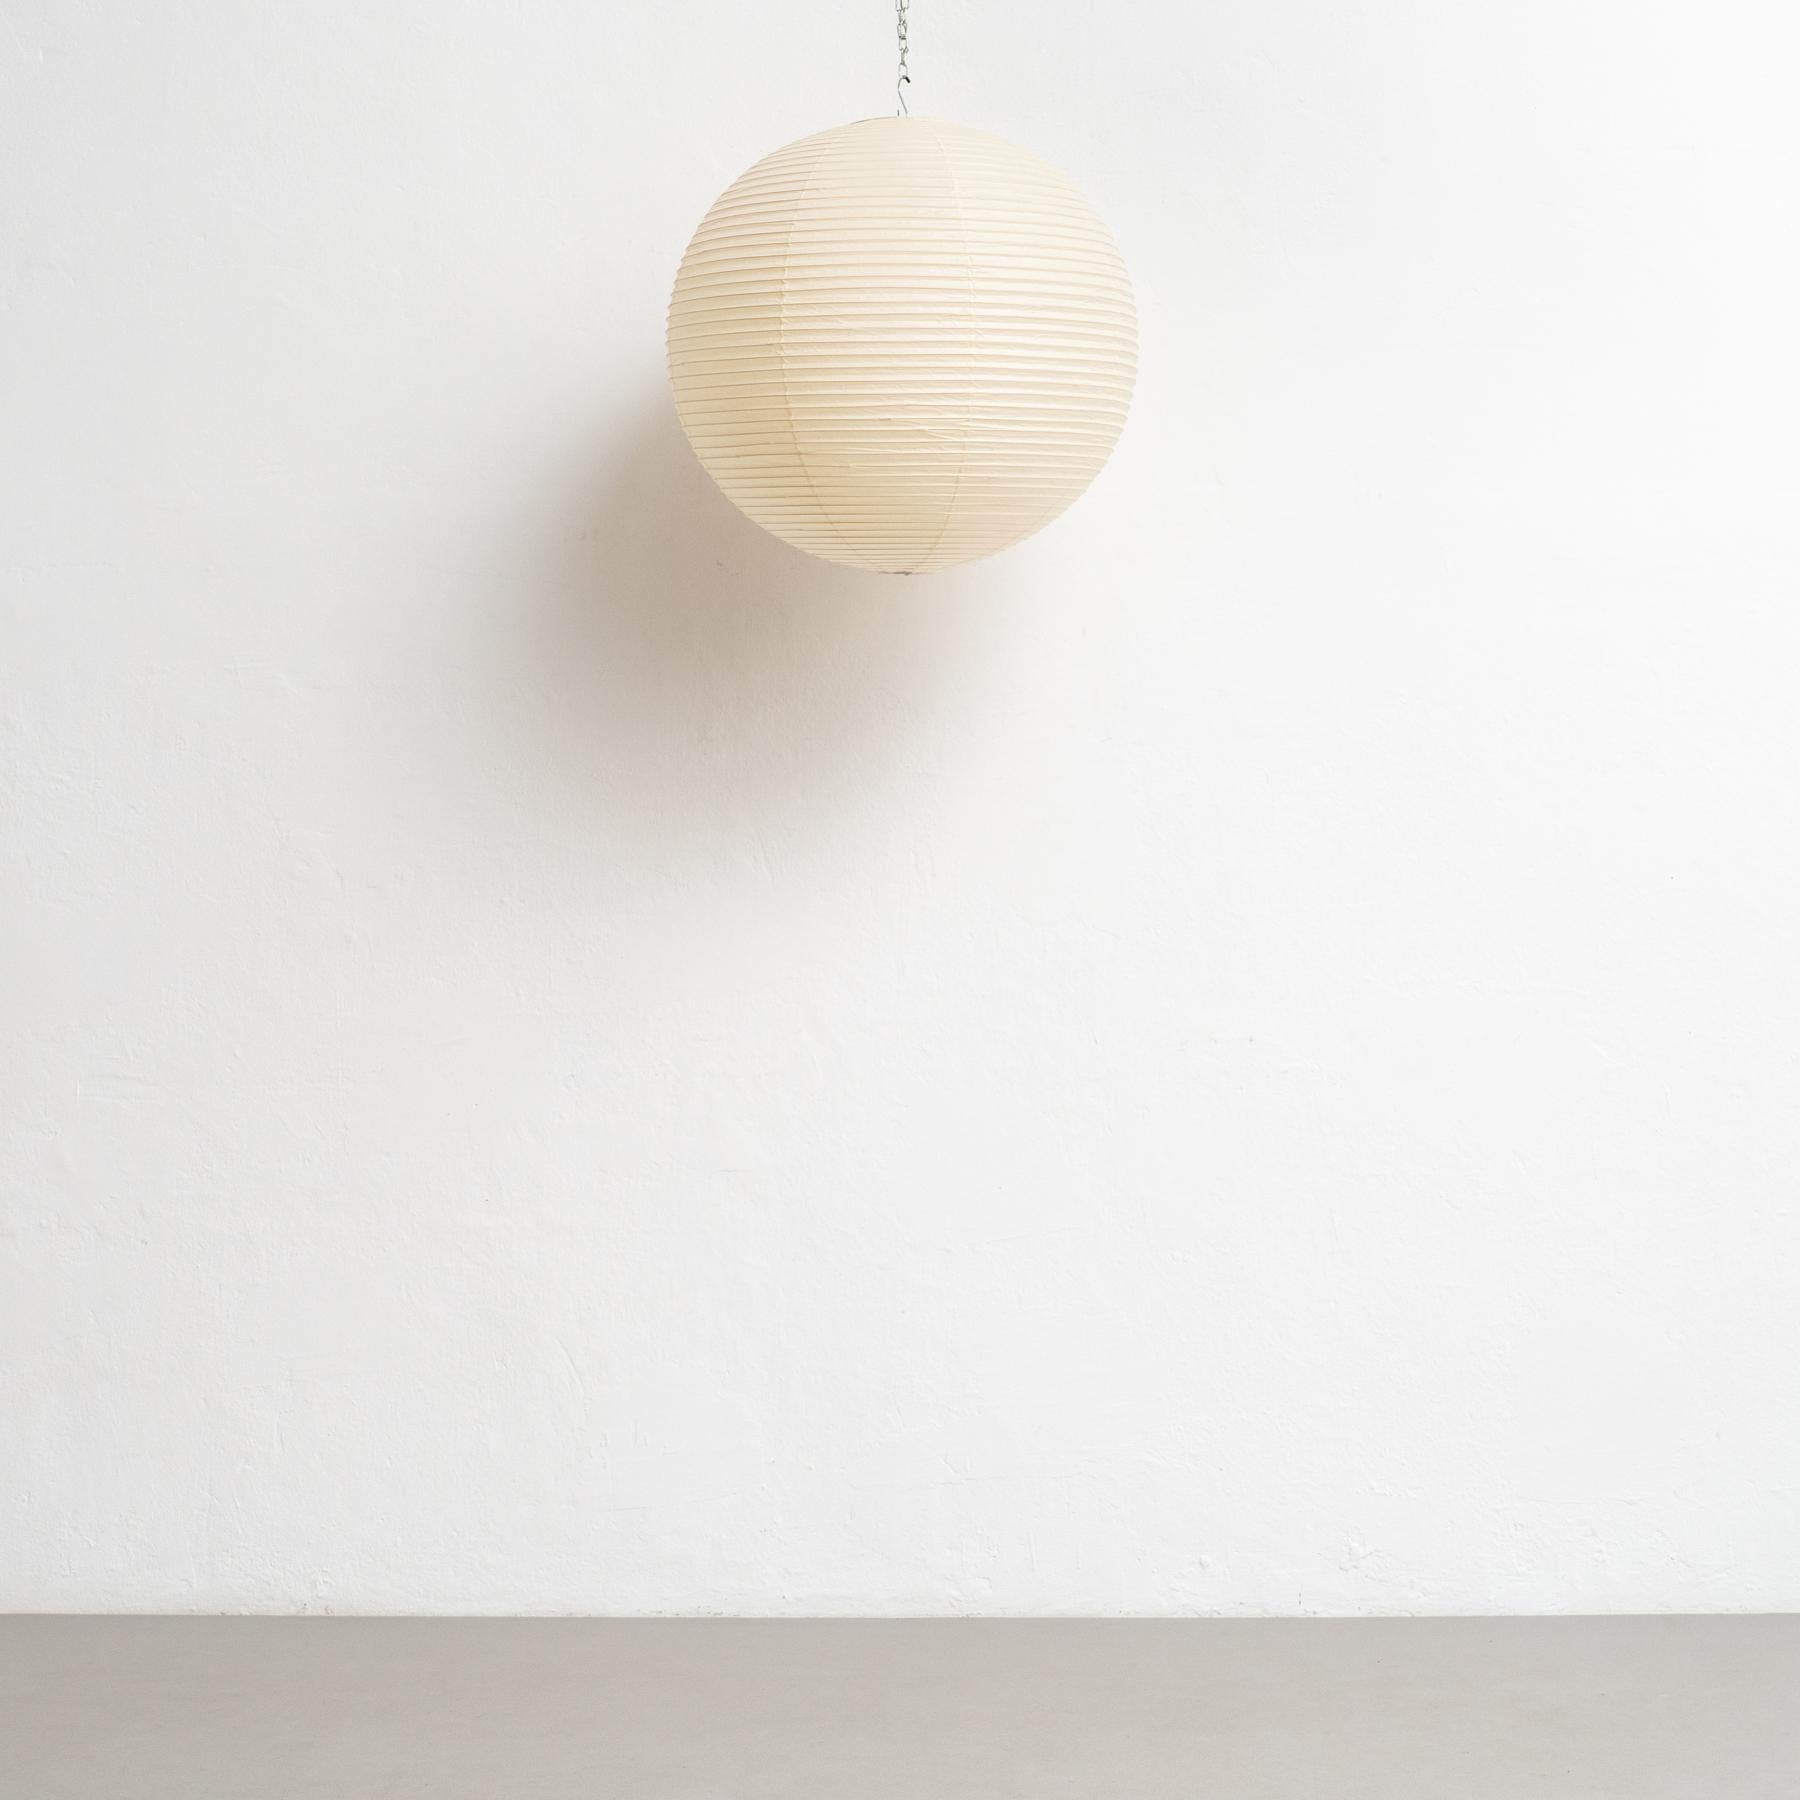 Erleben Sie die zeitlose Eleganz der Isamu Noguchi Akari 55A Pendelleuchte, ein Design-Meisterwerk, das Generationen überdauert. Diese 1951 entworfene und um 1980 von Ozeki & Co. in Japan fachmännisch gefertigte Lampe zeigt das bleibende Erbe der